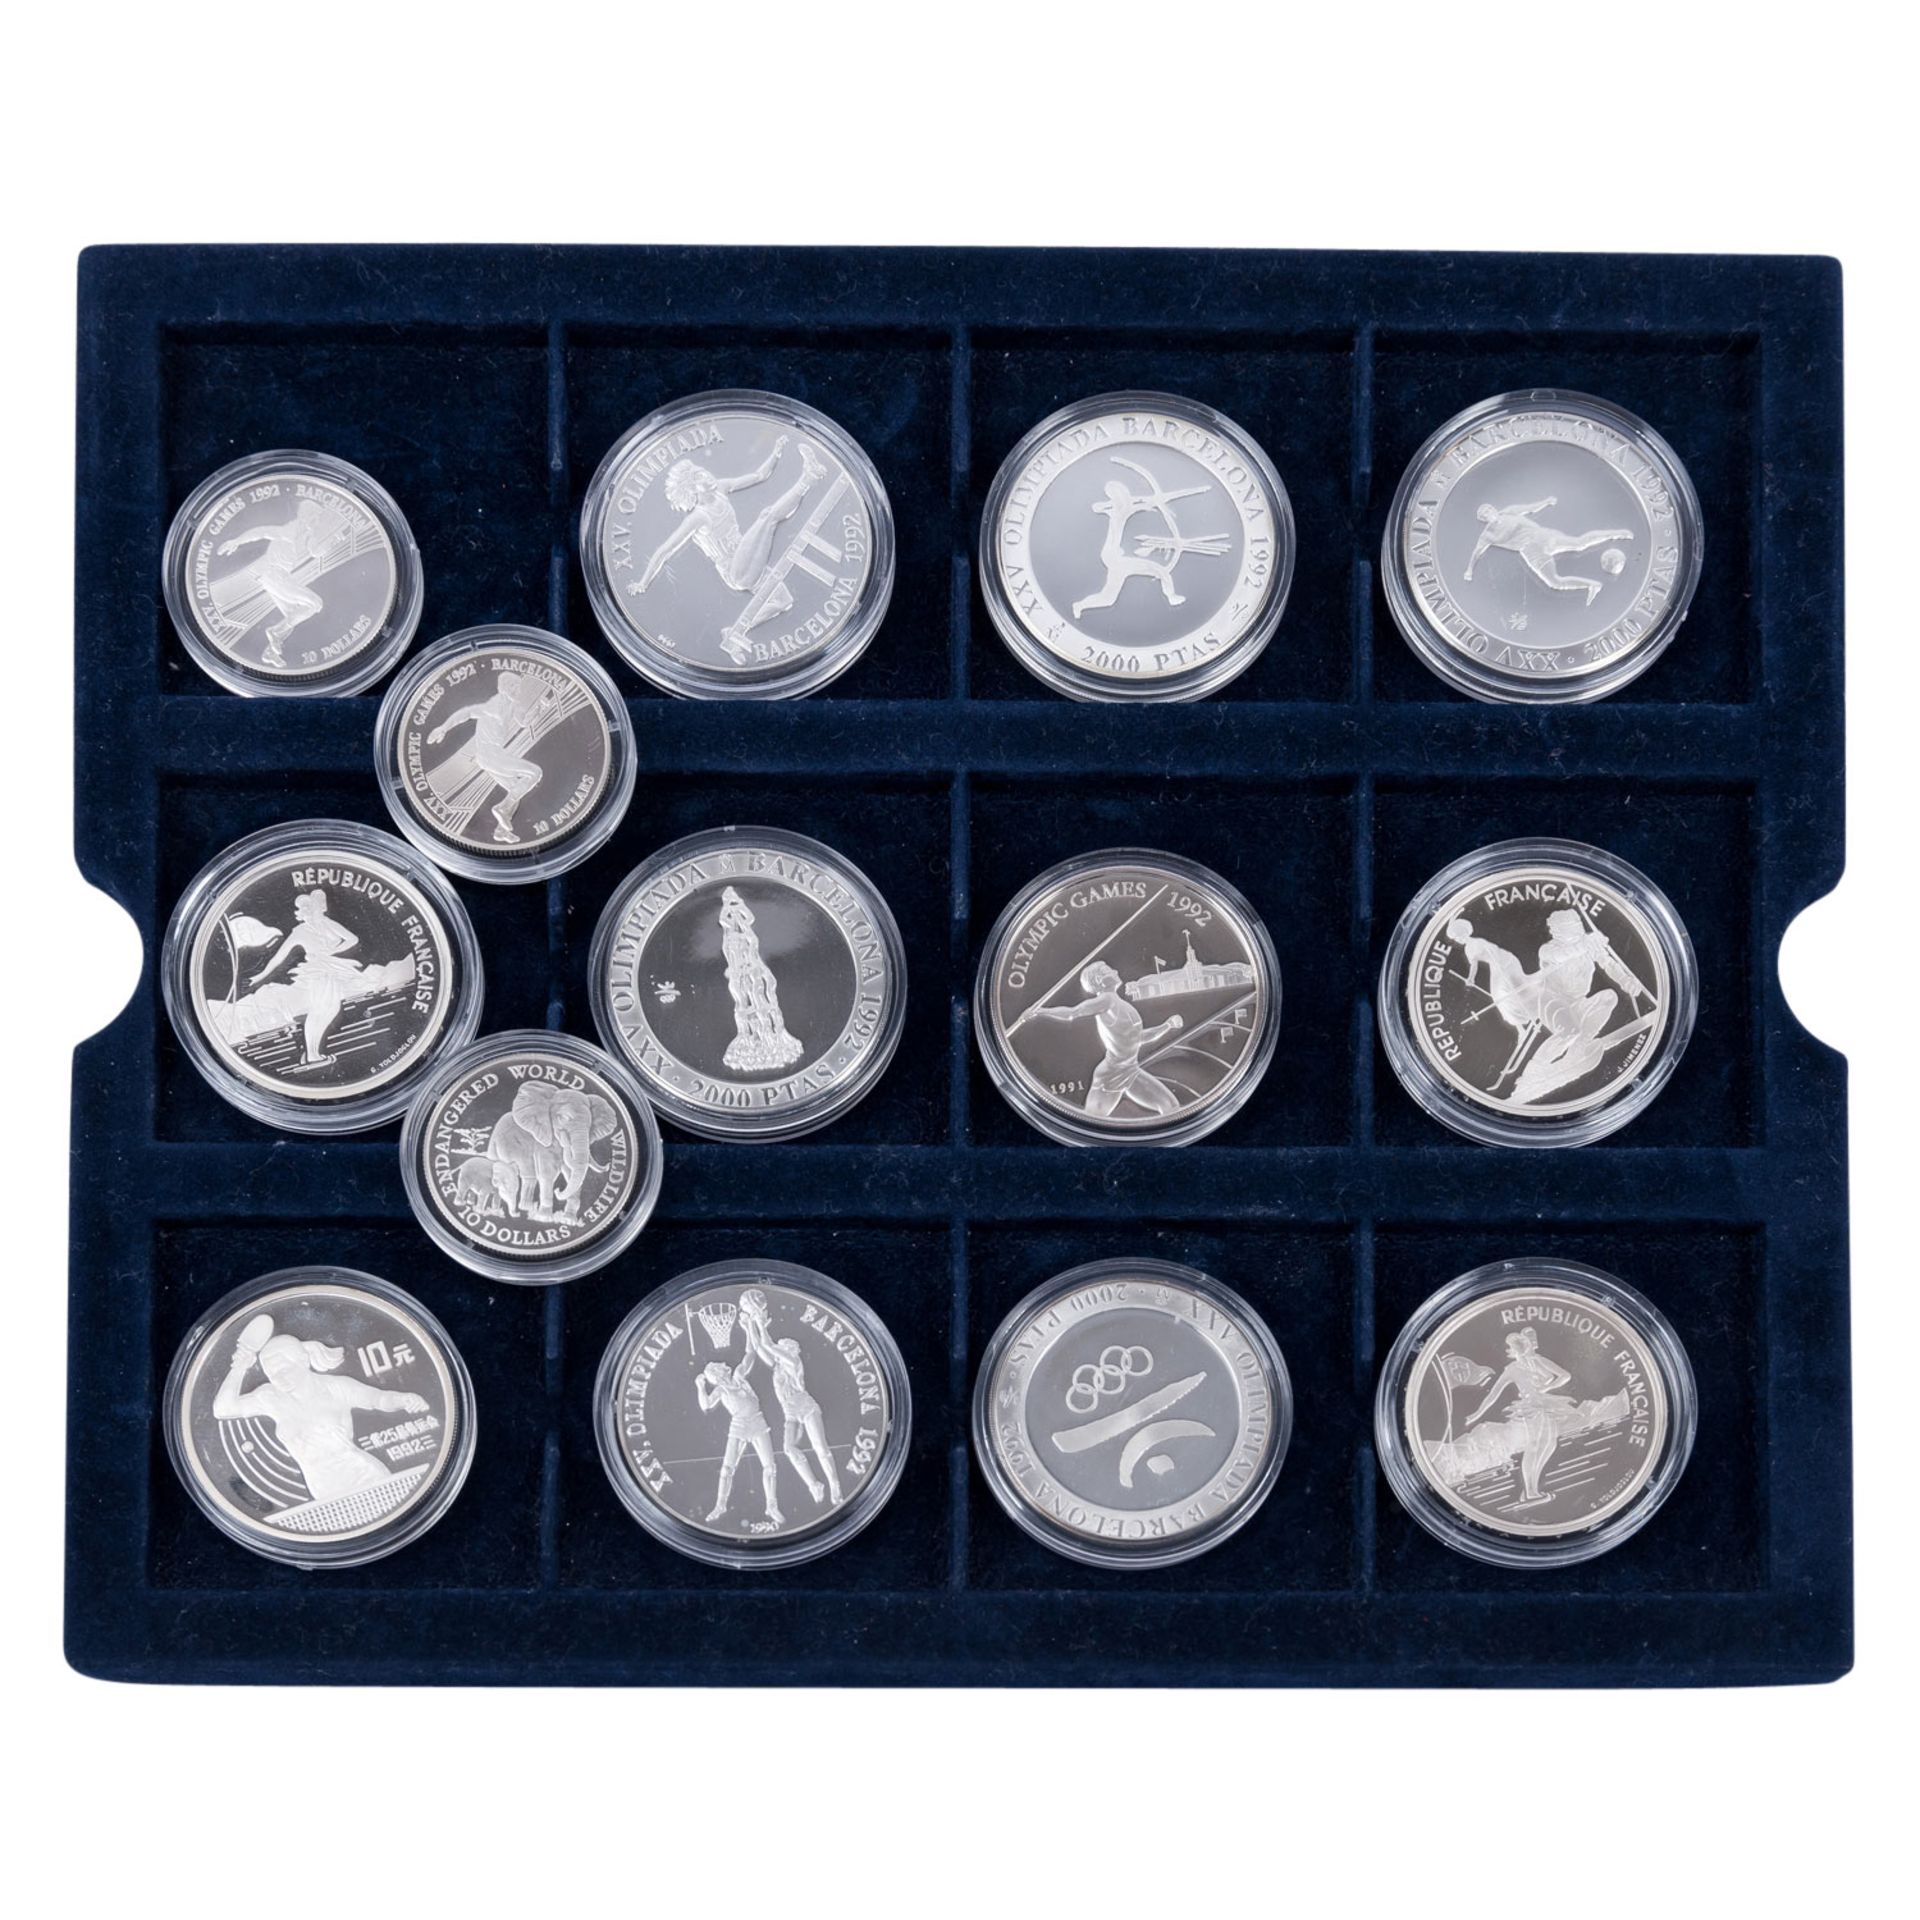 Gemischtes Silber-Konvolut mit Münzen und Medaillen. Ca. 51 Stück. - Bild 4 aus 5